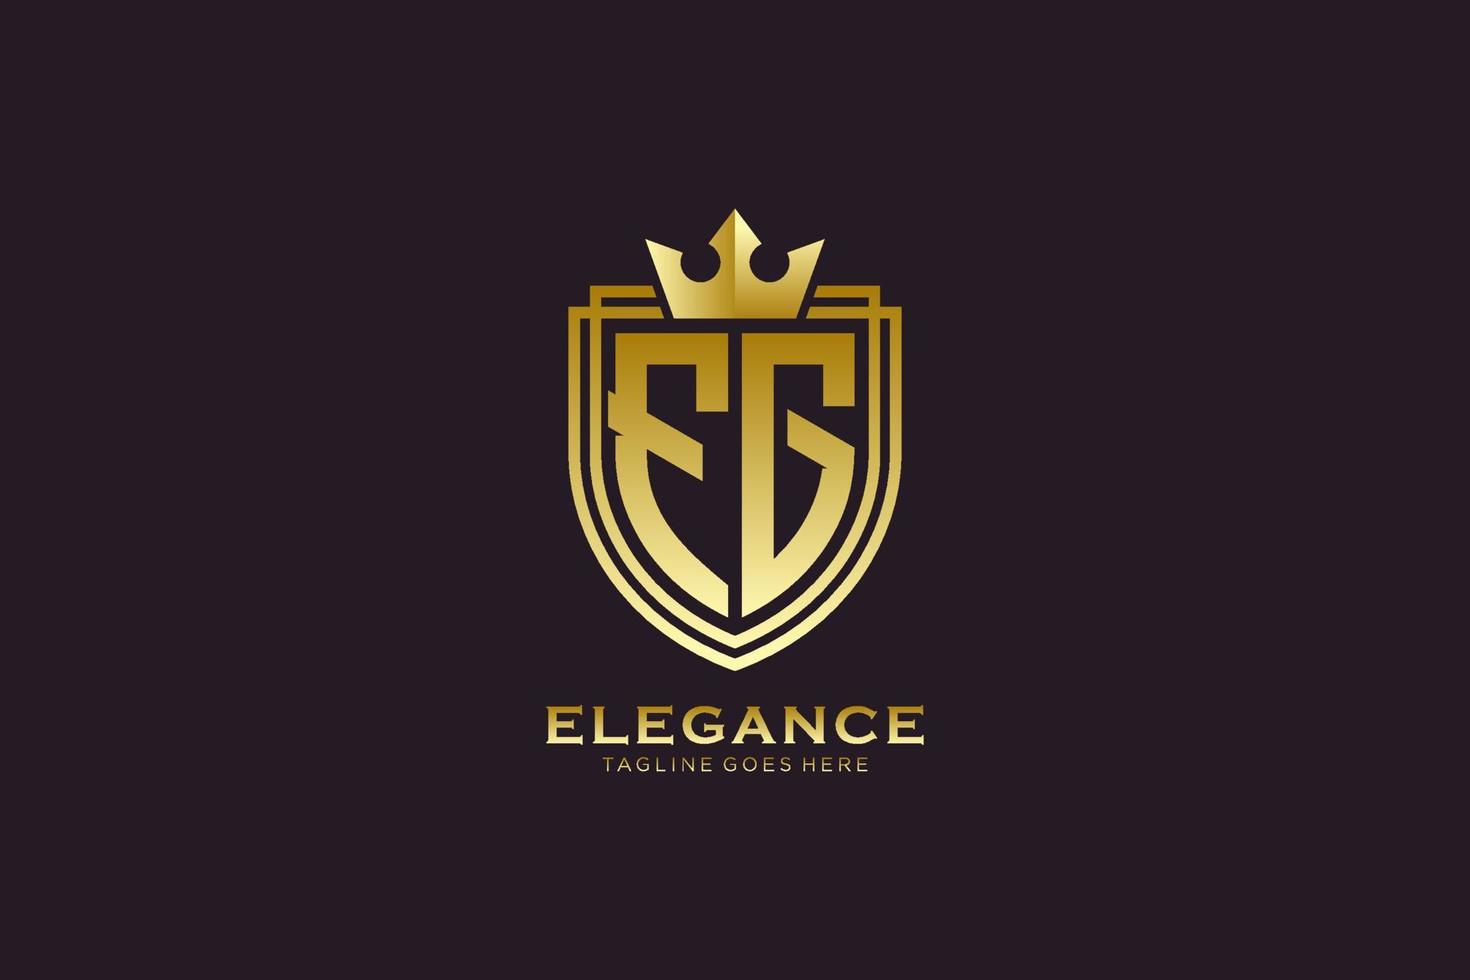 logotipo de monograma de lujo inicial fg elegante o plantilla de placa con pergaminos y corona real - perfecto para proyectos de marca de lujo vector